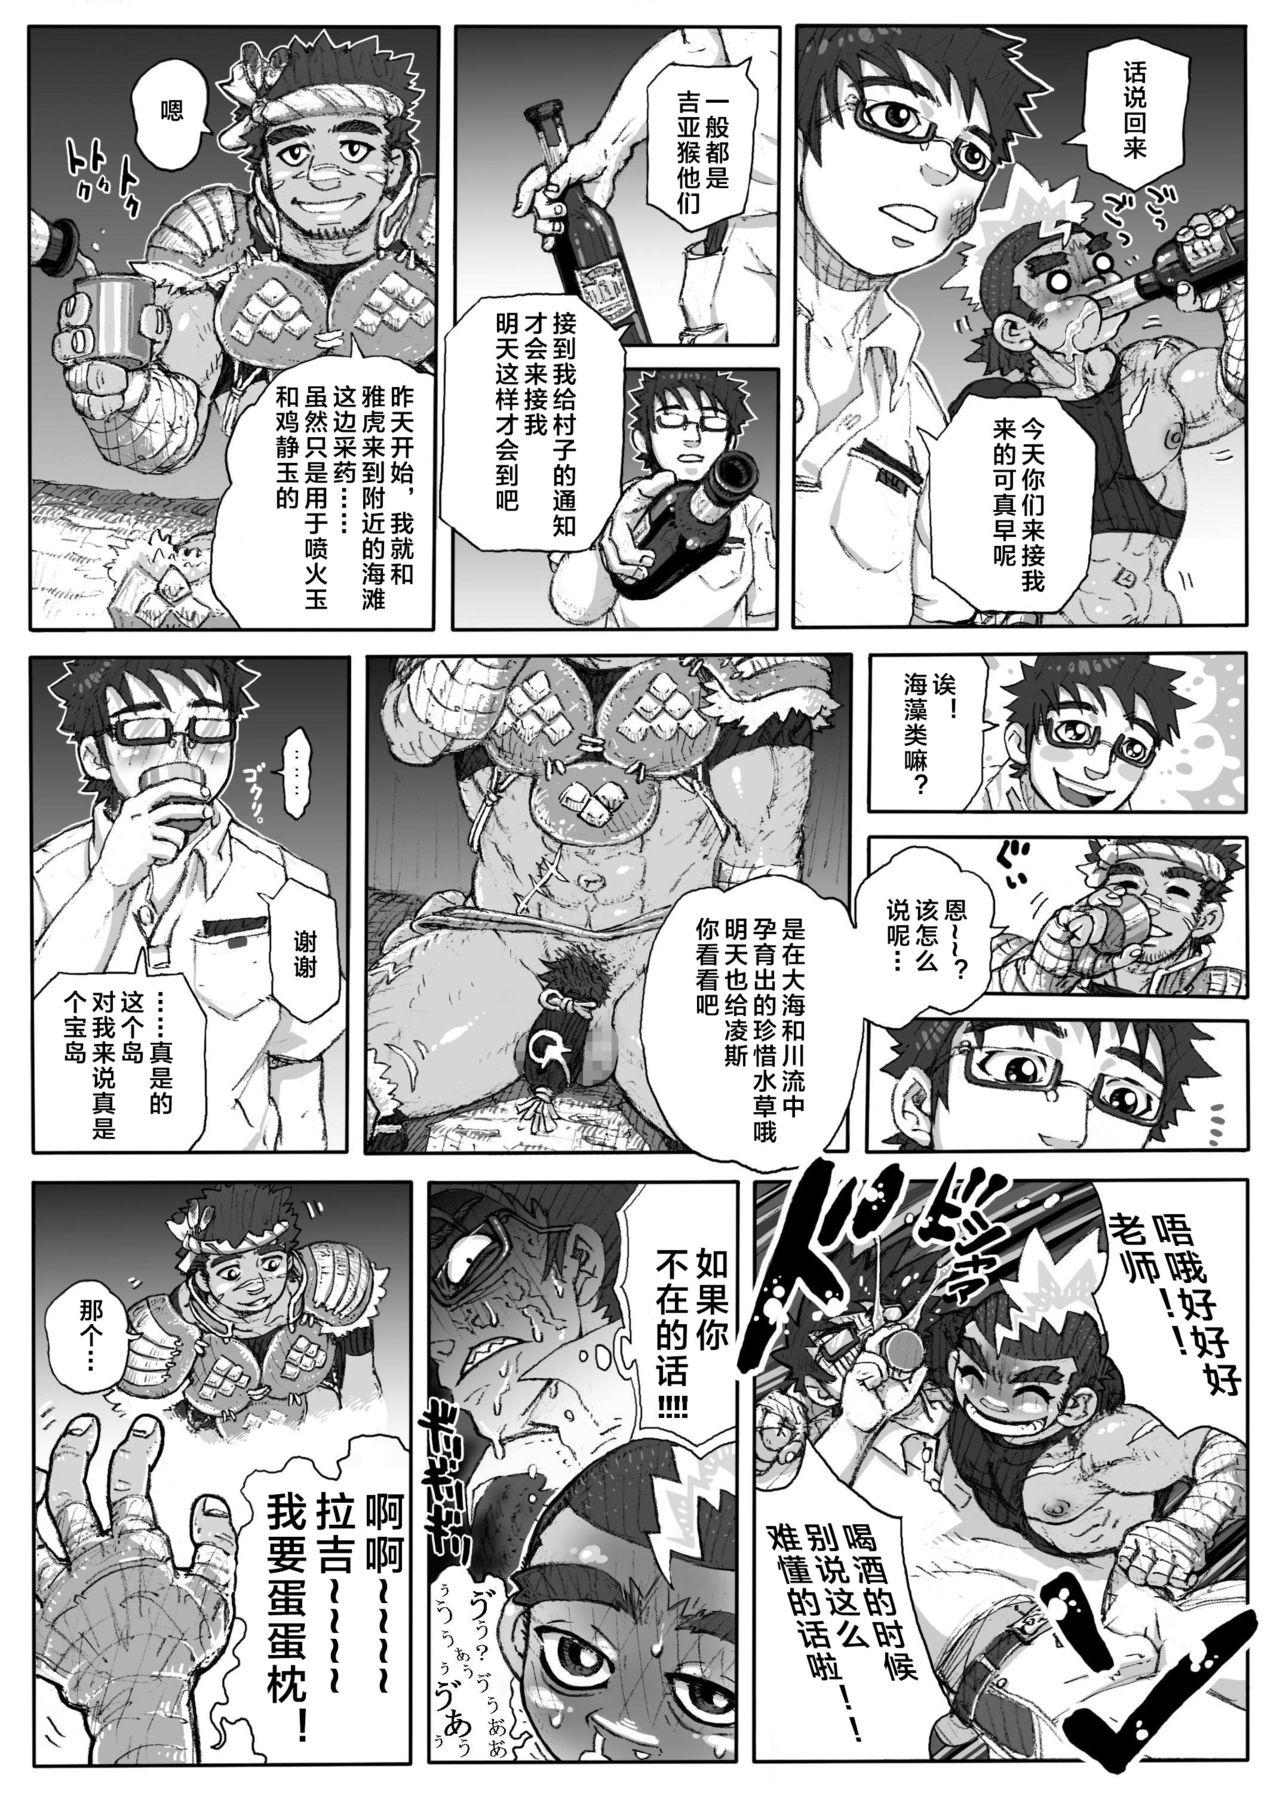 Stepsiblings Hepoe no Kuni kara 1 - Mizu no Gakusha Sensei, Hi no Buzoku no Saru ni Hazukashimerareru no Maki Women Sucking Dicks - Page 11